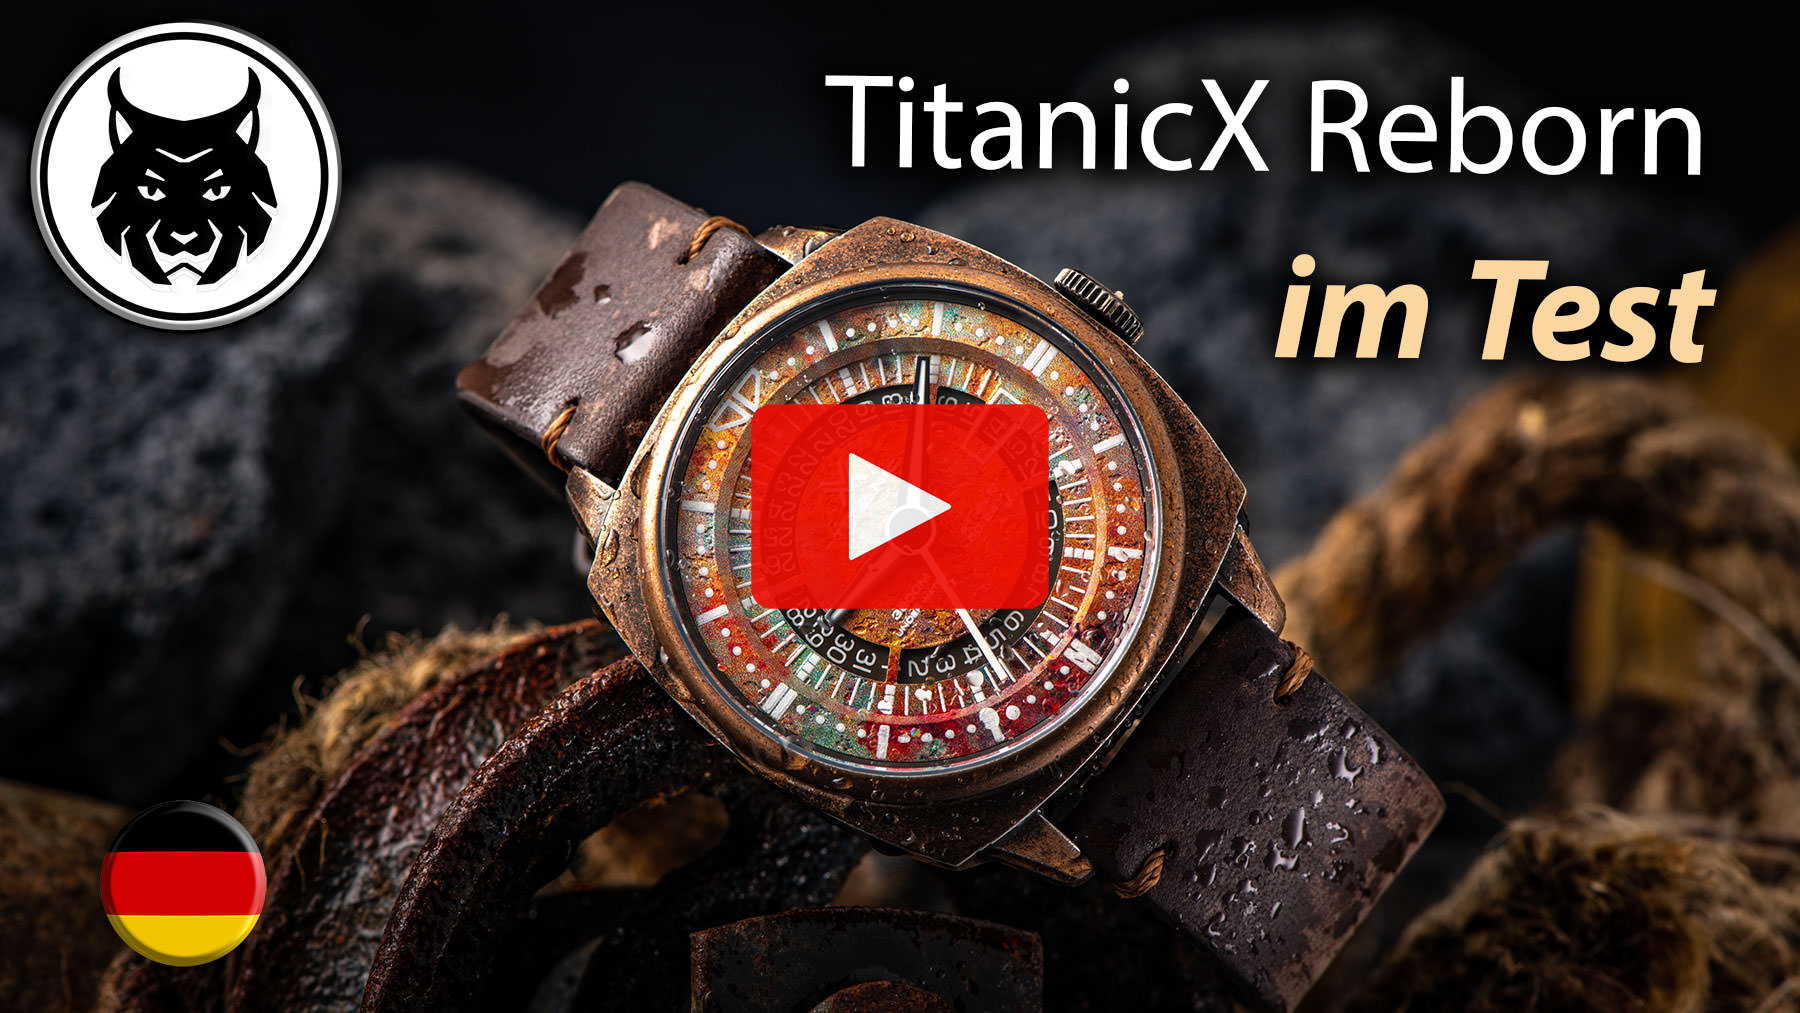 TitanicX Reborn OVD-Watches im Video. Details, Hands-on, Wristshots, ... 